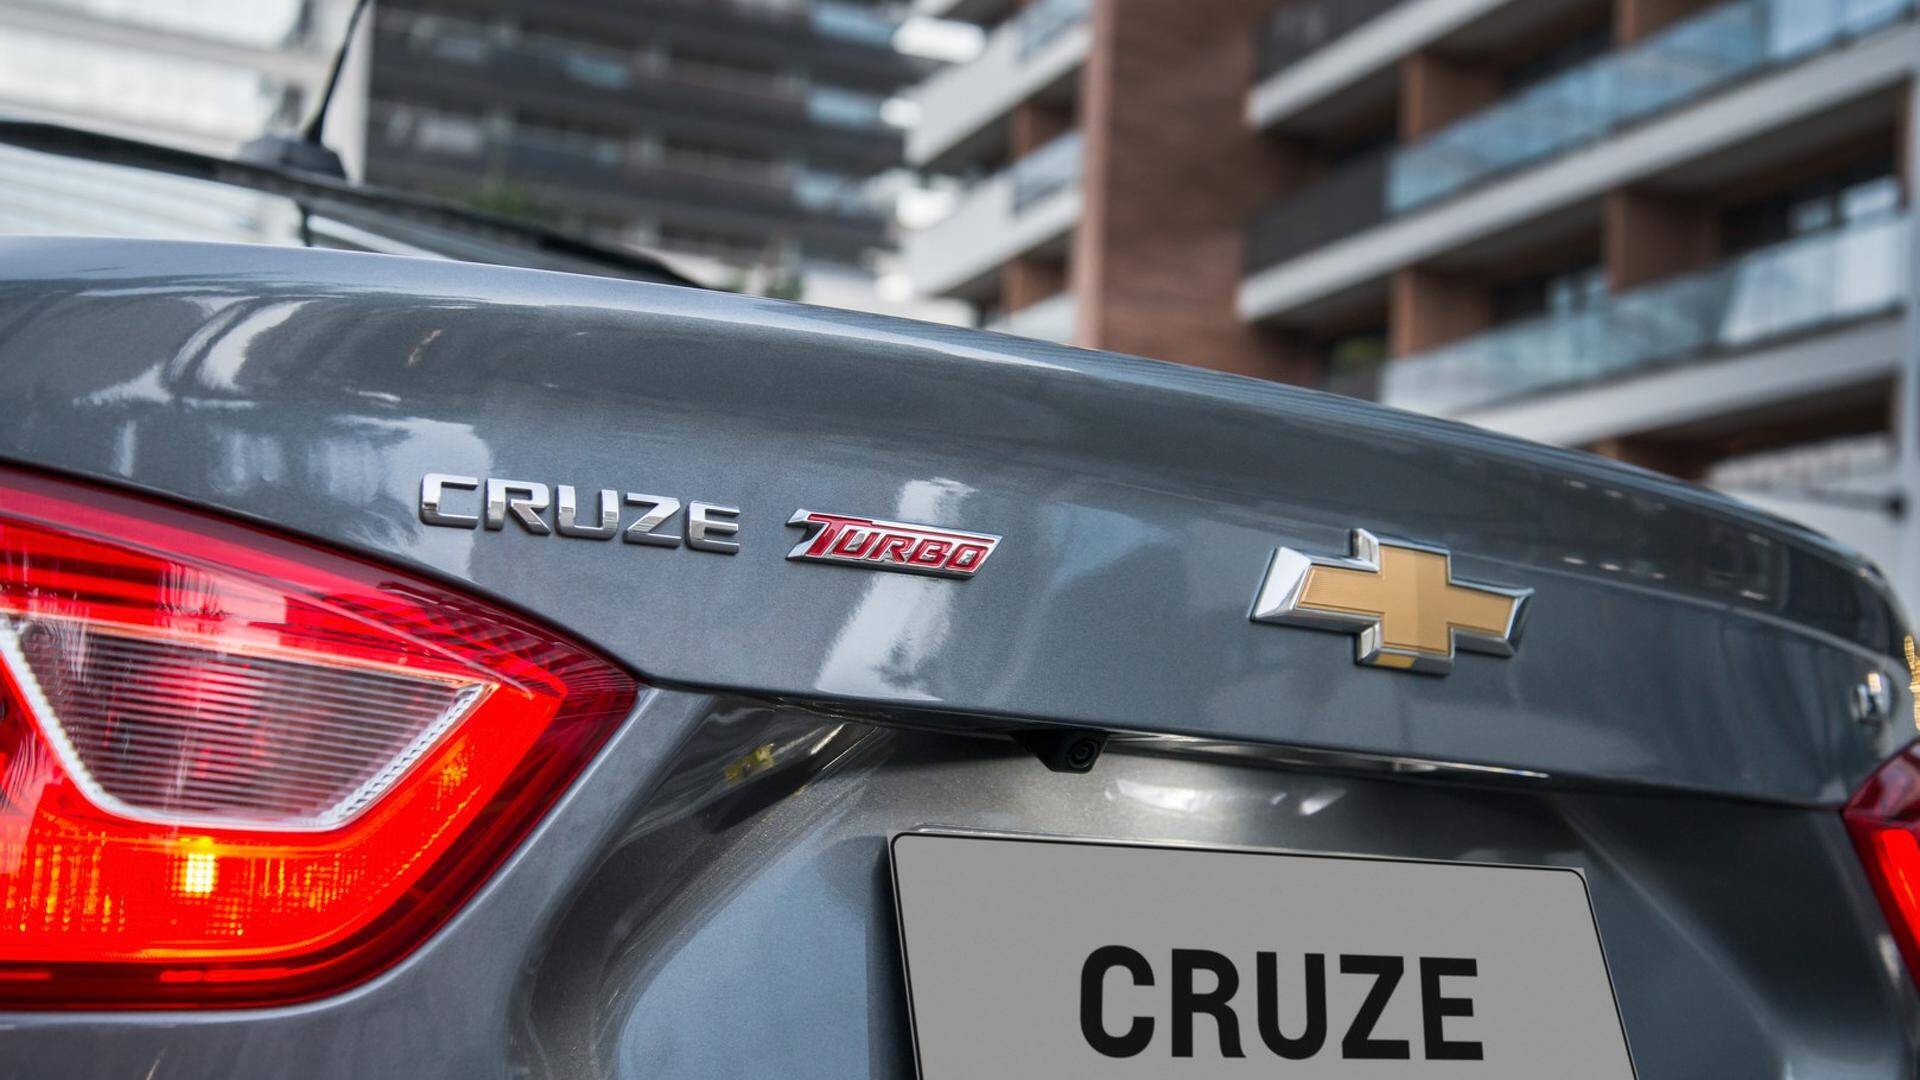 Chevrolet Cruze 2018. Foto: Divulgação